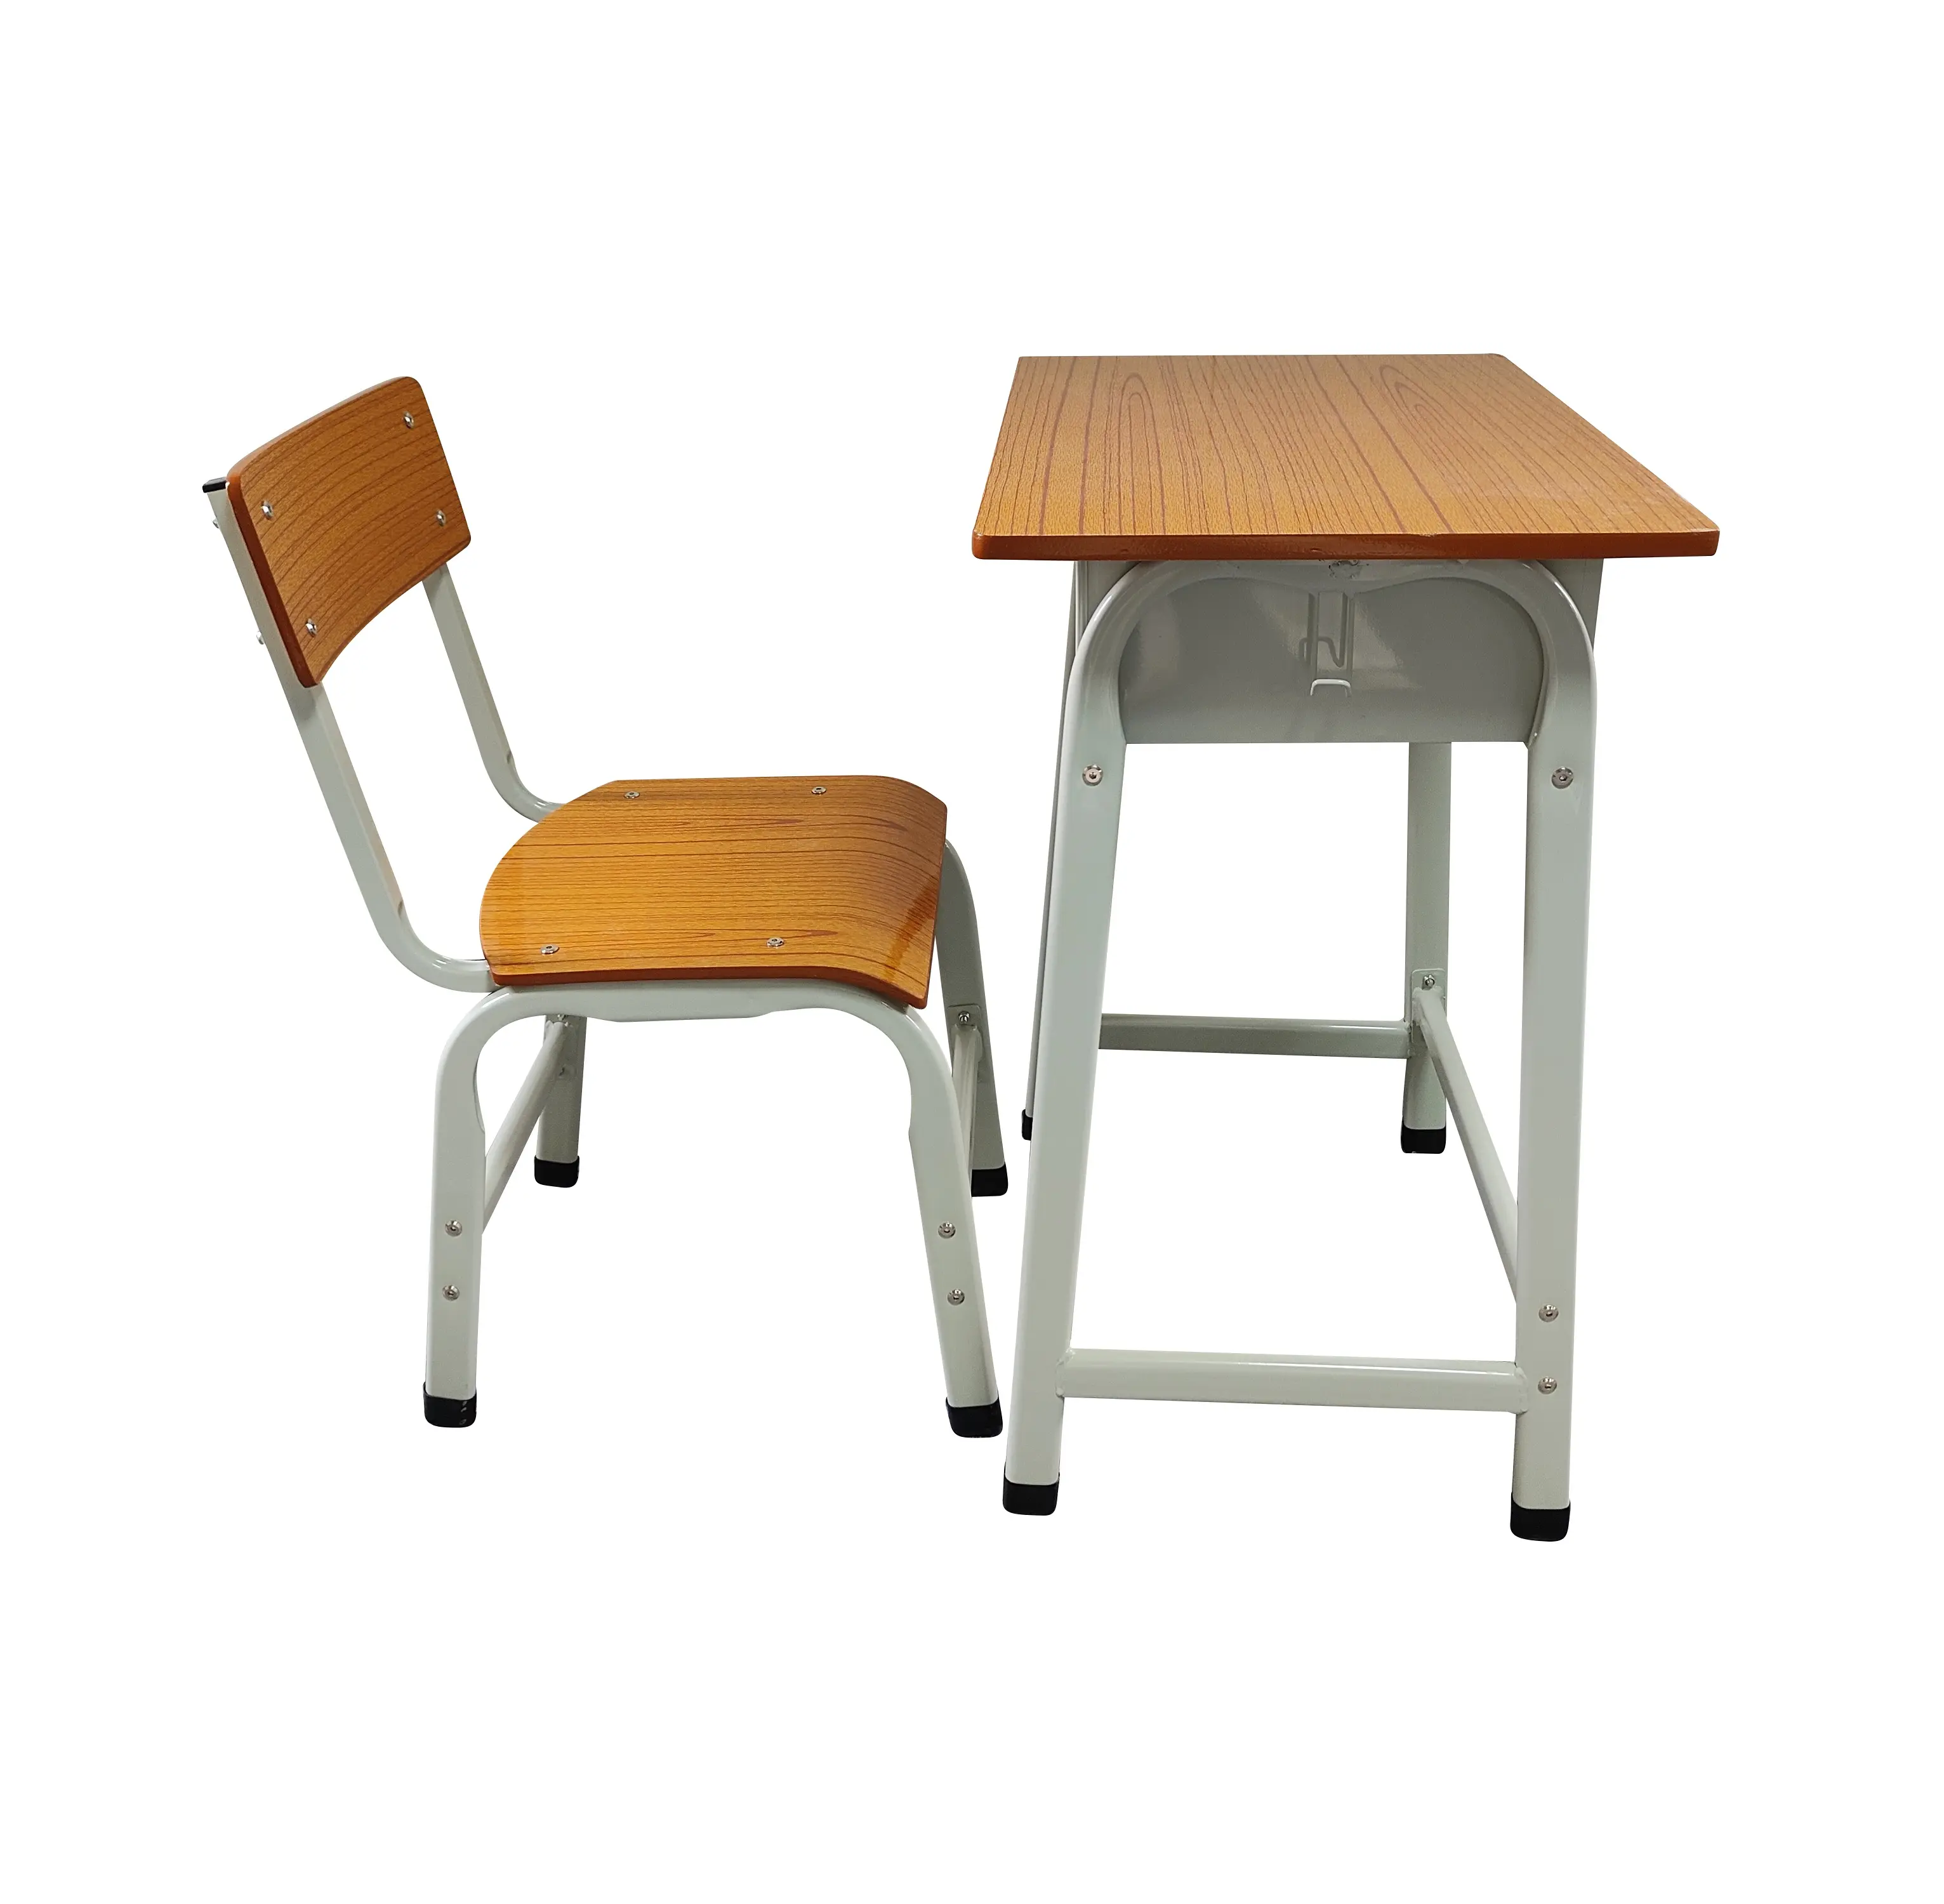 طاولات كرسي معدني للطلاب بتصميم بسيط أثاث مدارس للمنزل والمكتب وغرف النوم وغرف المعيشة للطلاب